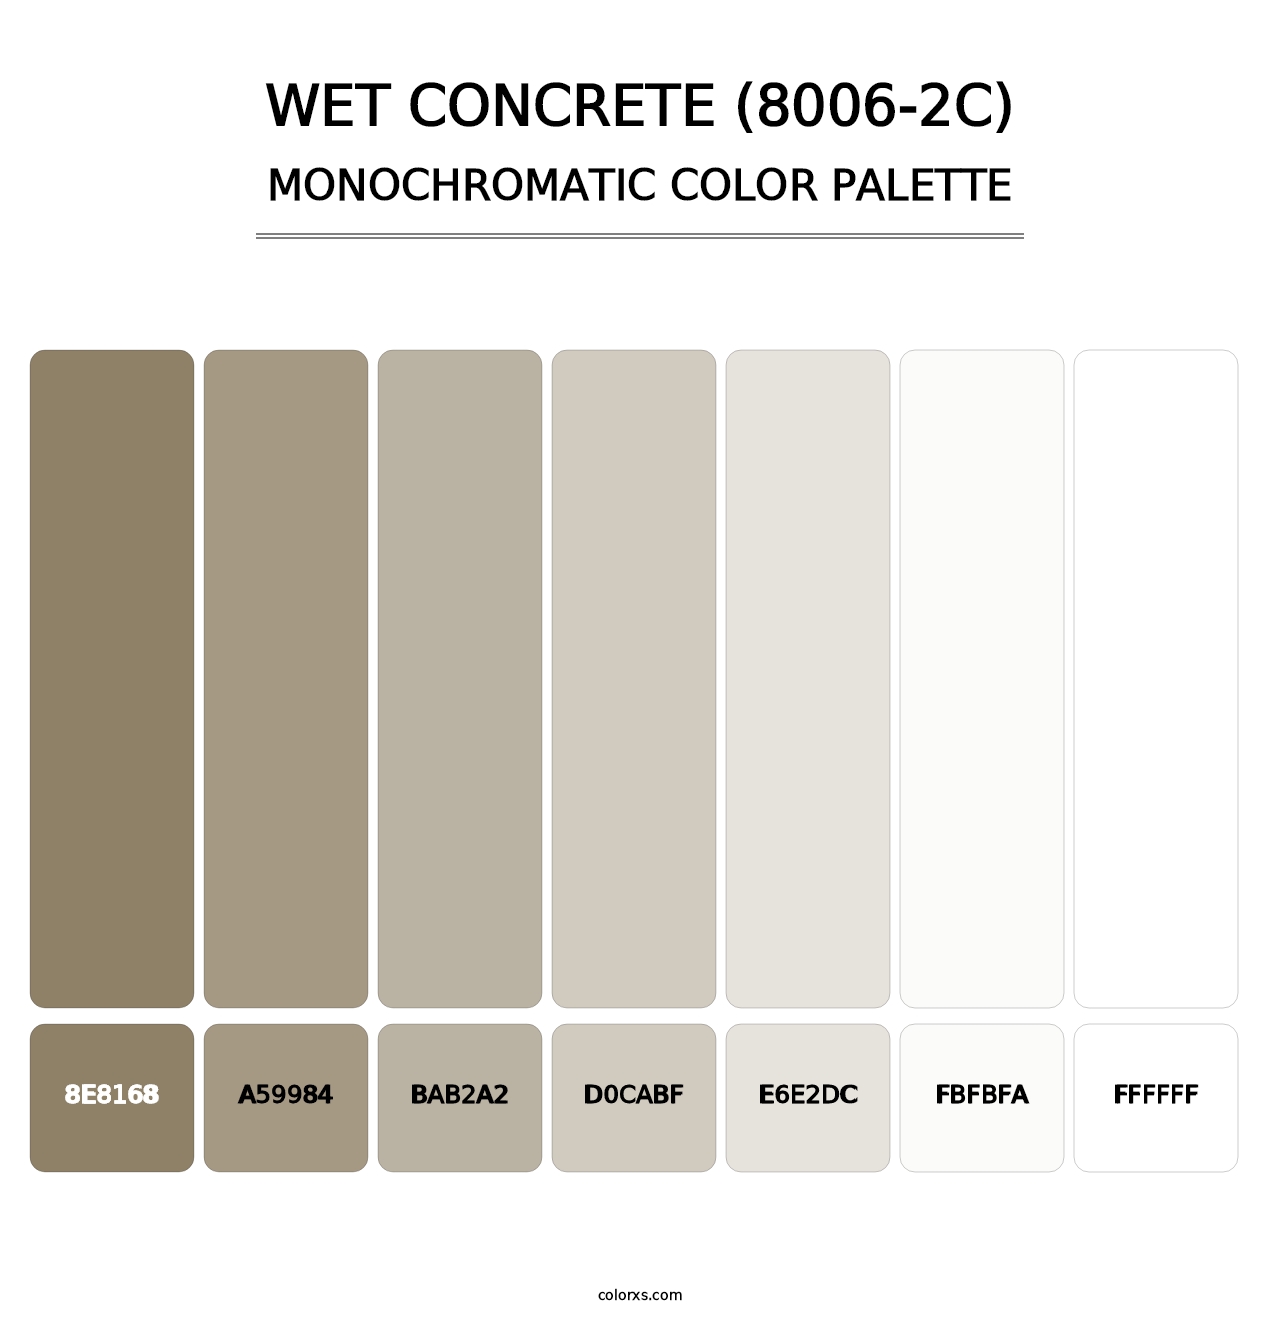 Wet Concrete (8006-2C) - Monochromatic Color Palette